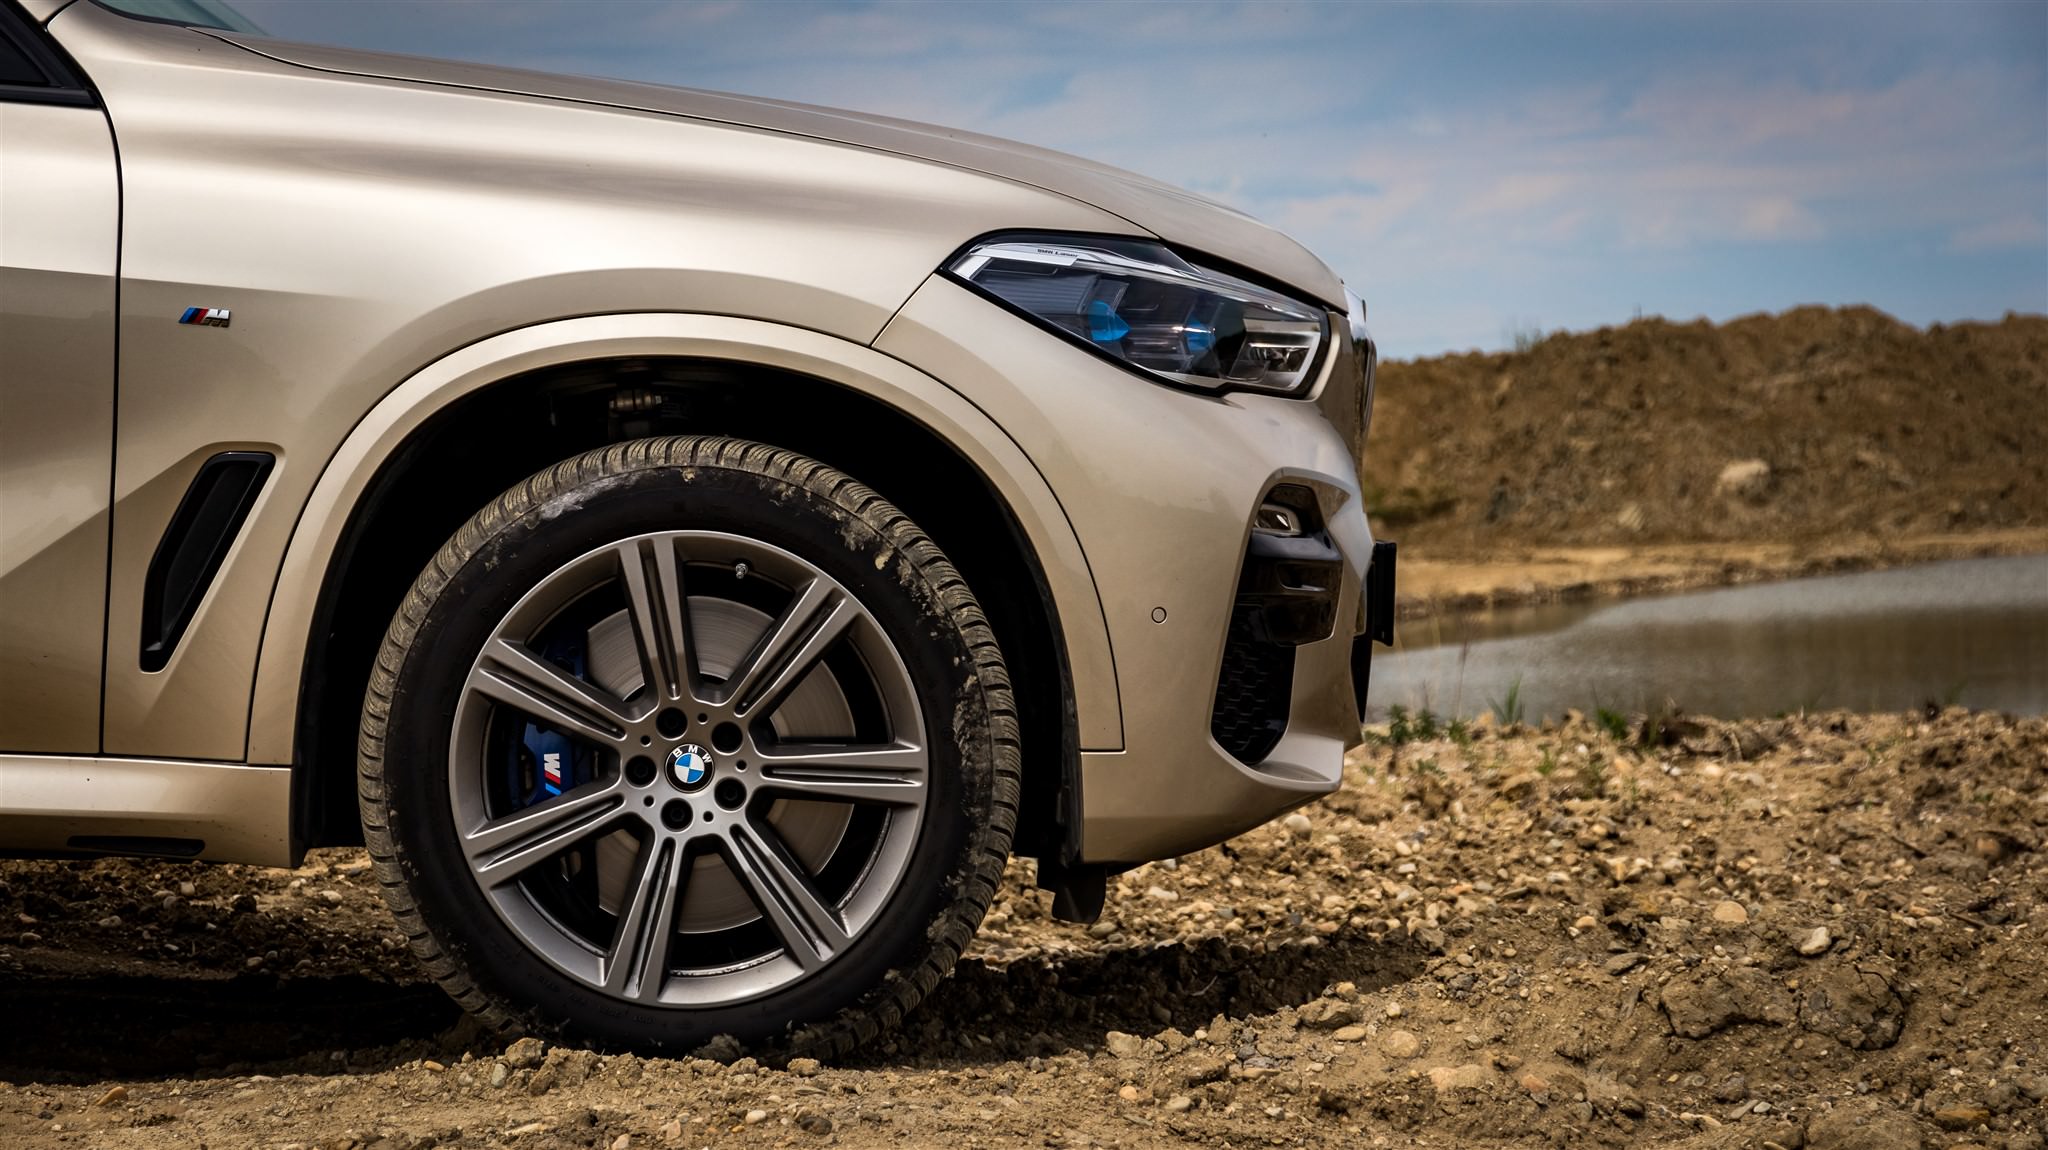 Far away Estimate exhaust BMW X5 2019 xDrive30d - review BMW X5 2019 xDrive30d - review : Gadget.ro –  Hi-Tech Lifestyle